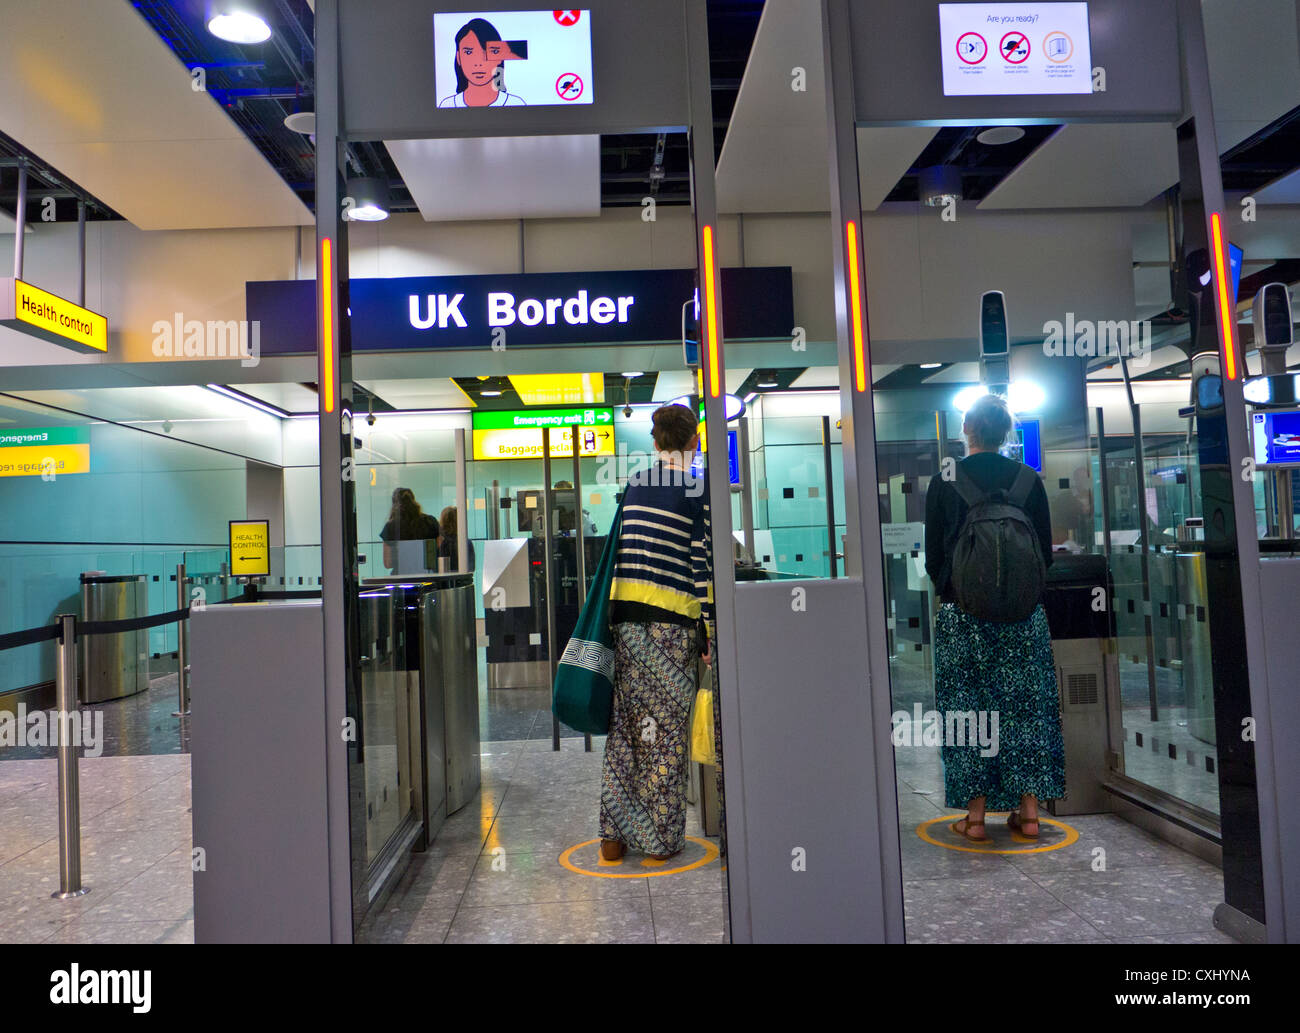 Pasaporte británico puertas electrónicas Control fronterizo para los pasajeros que llegan a la terminal 3 del aeropuerto Heathrow de Londres Foto de stock